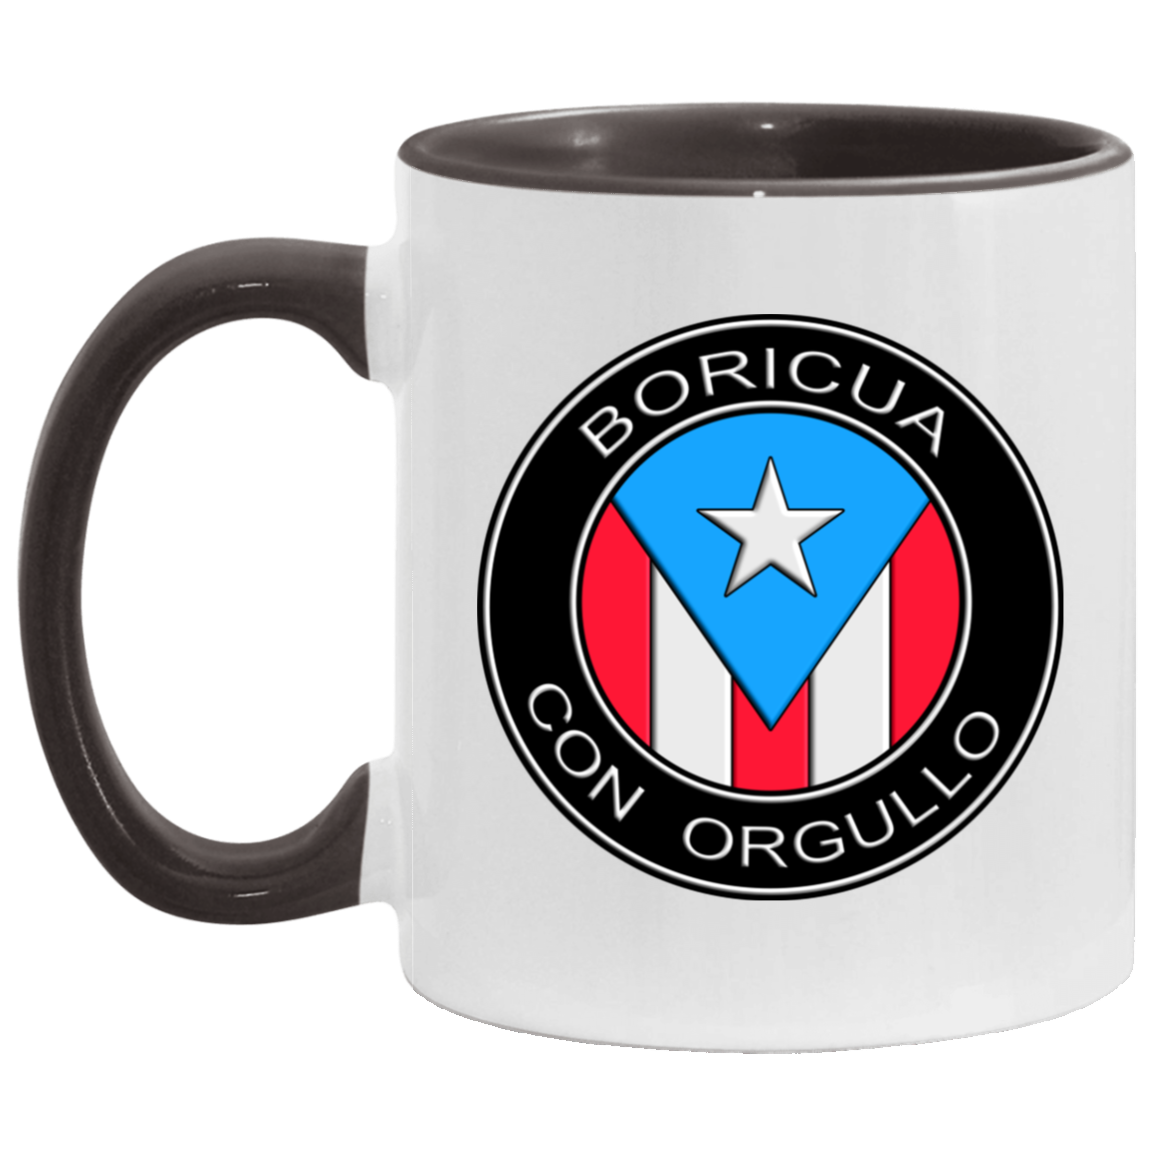 Boricua Con Orgullo 11OZ Accent Mug - Puerto Rican Pride